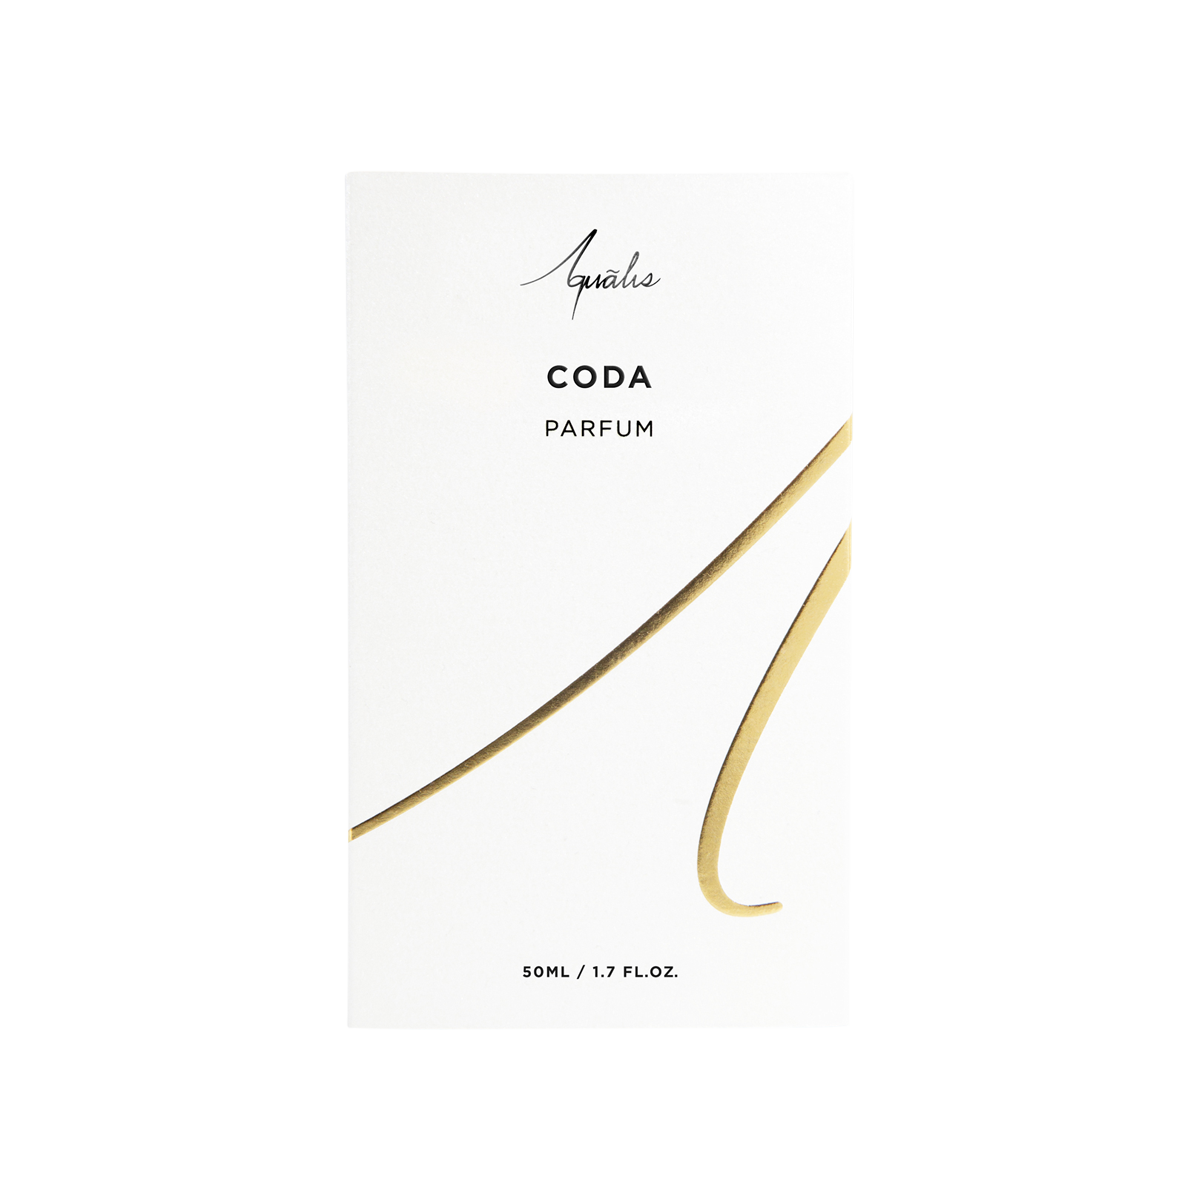 Aqualis - Coda Extrait de Parfum